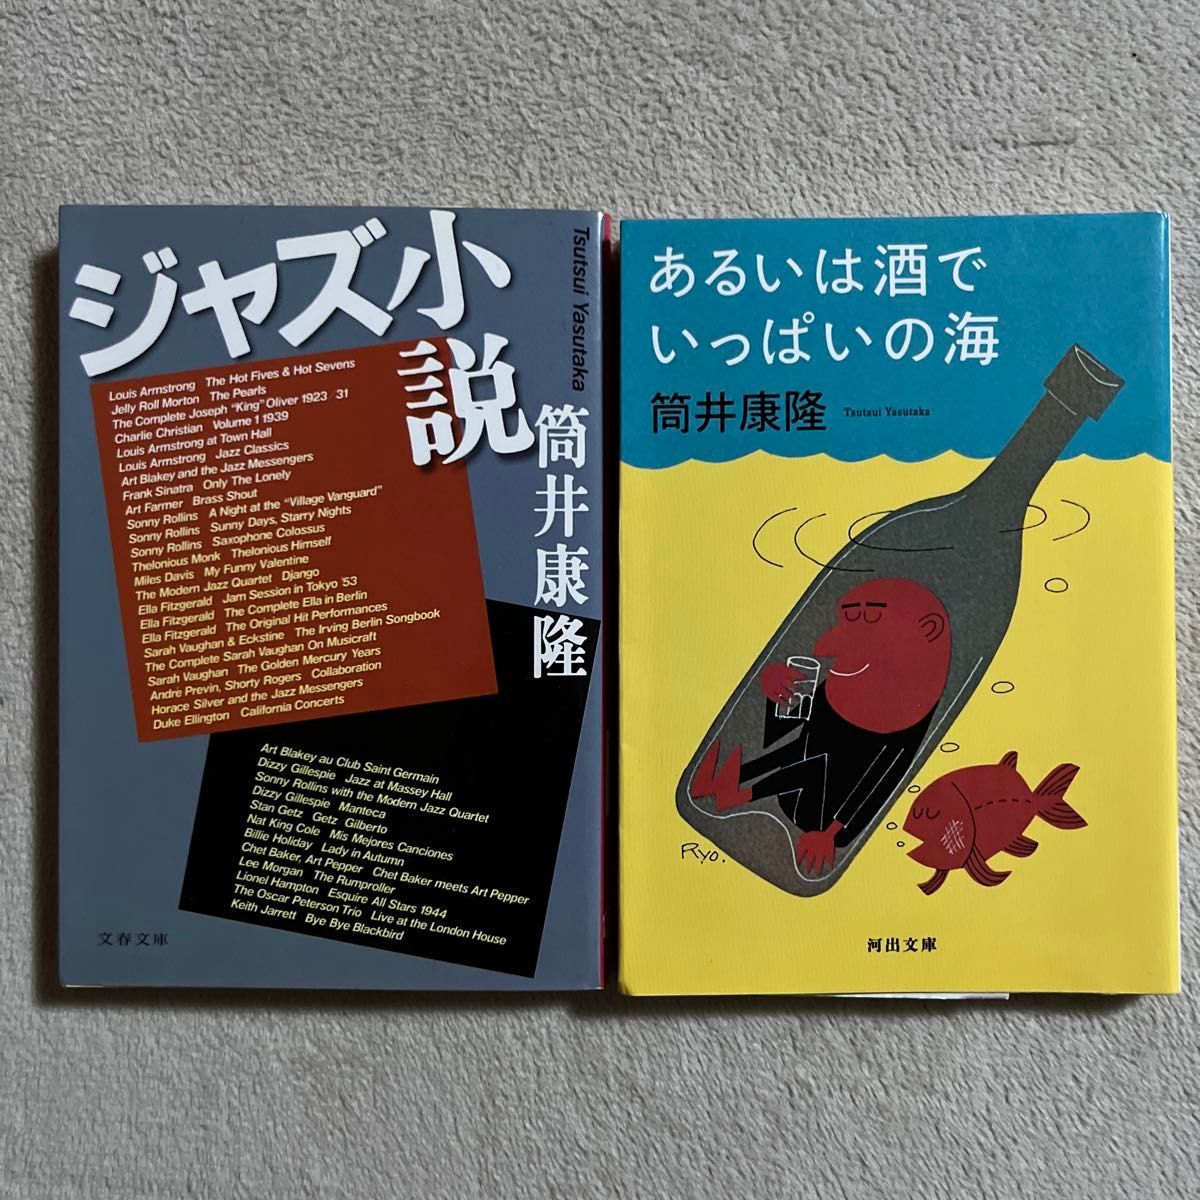 筒井康隆「ジャズ小説」「あるいは酒でいっぱいの海」